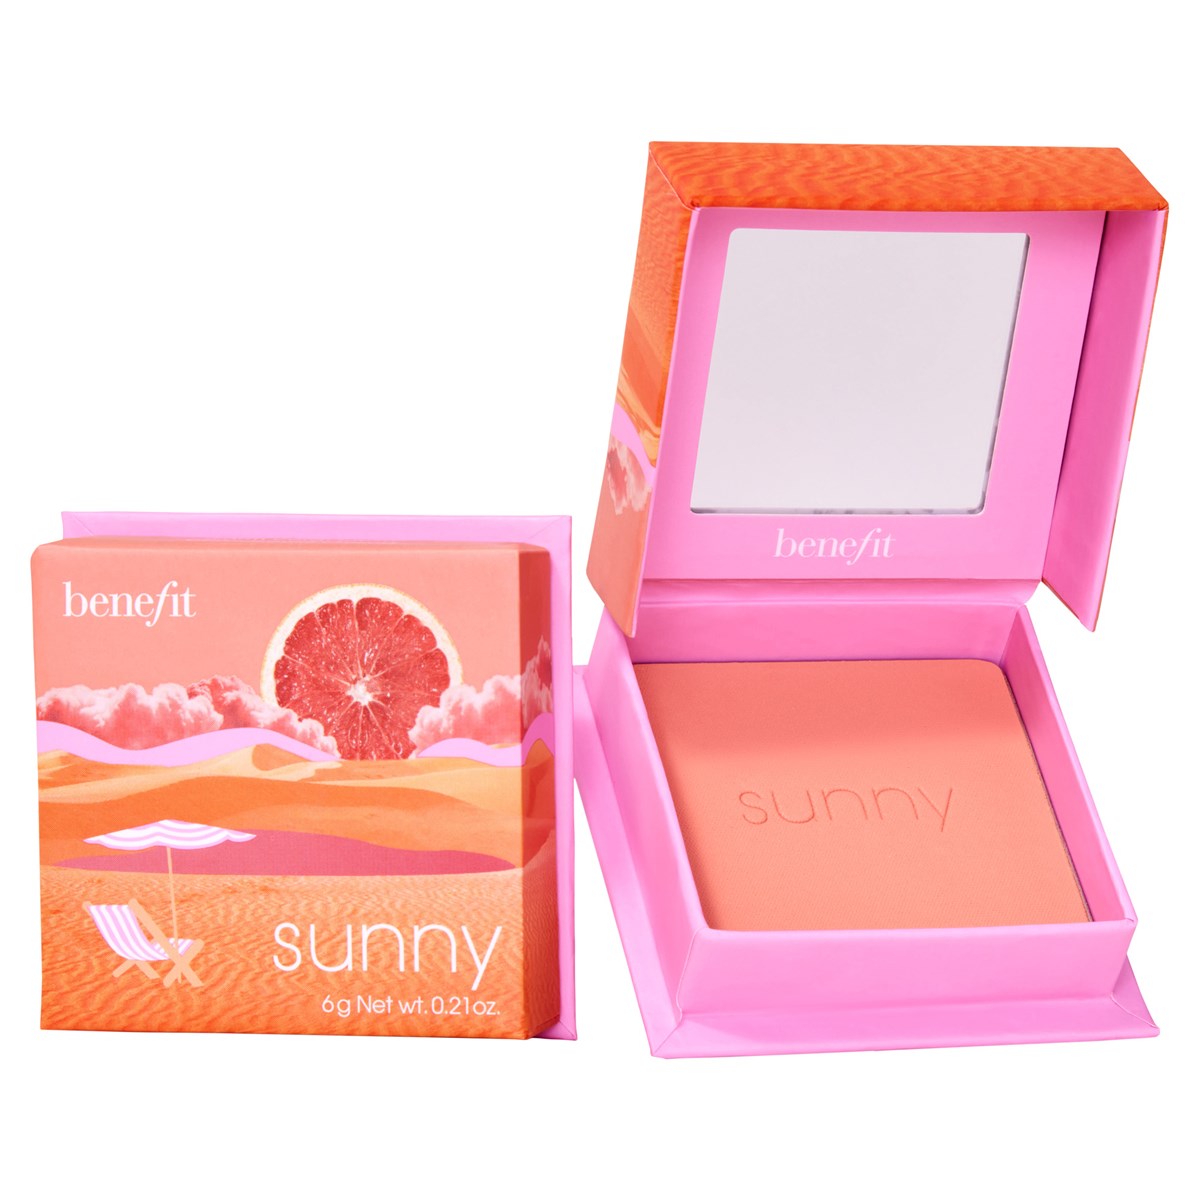 BENEFIT - Sunny Warm Coral Blush